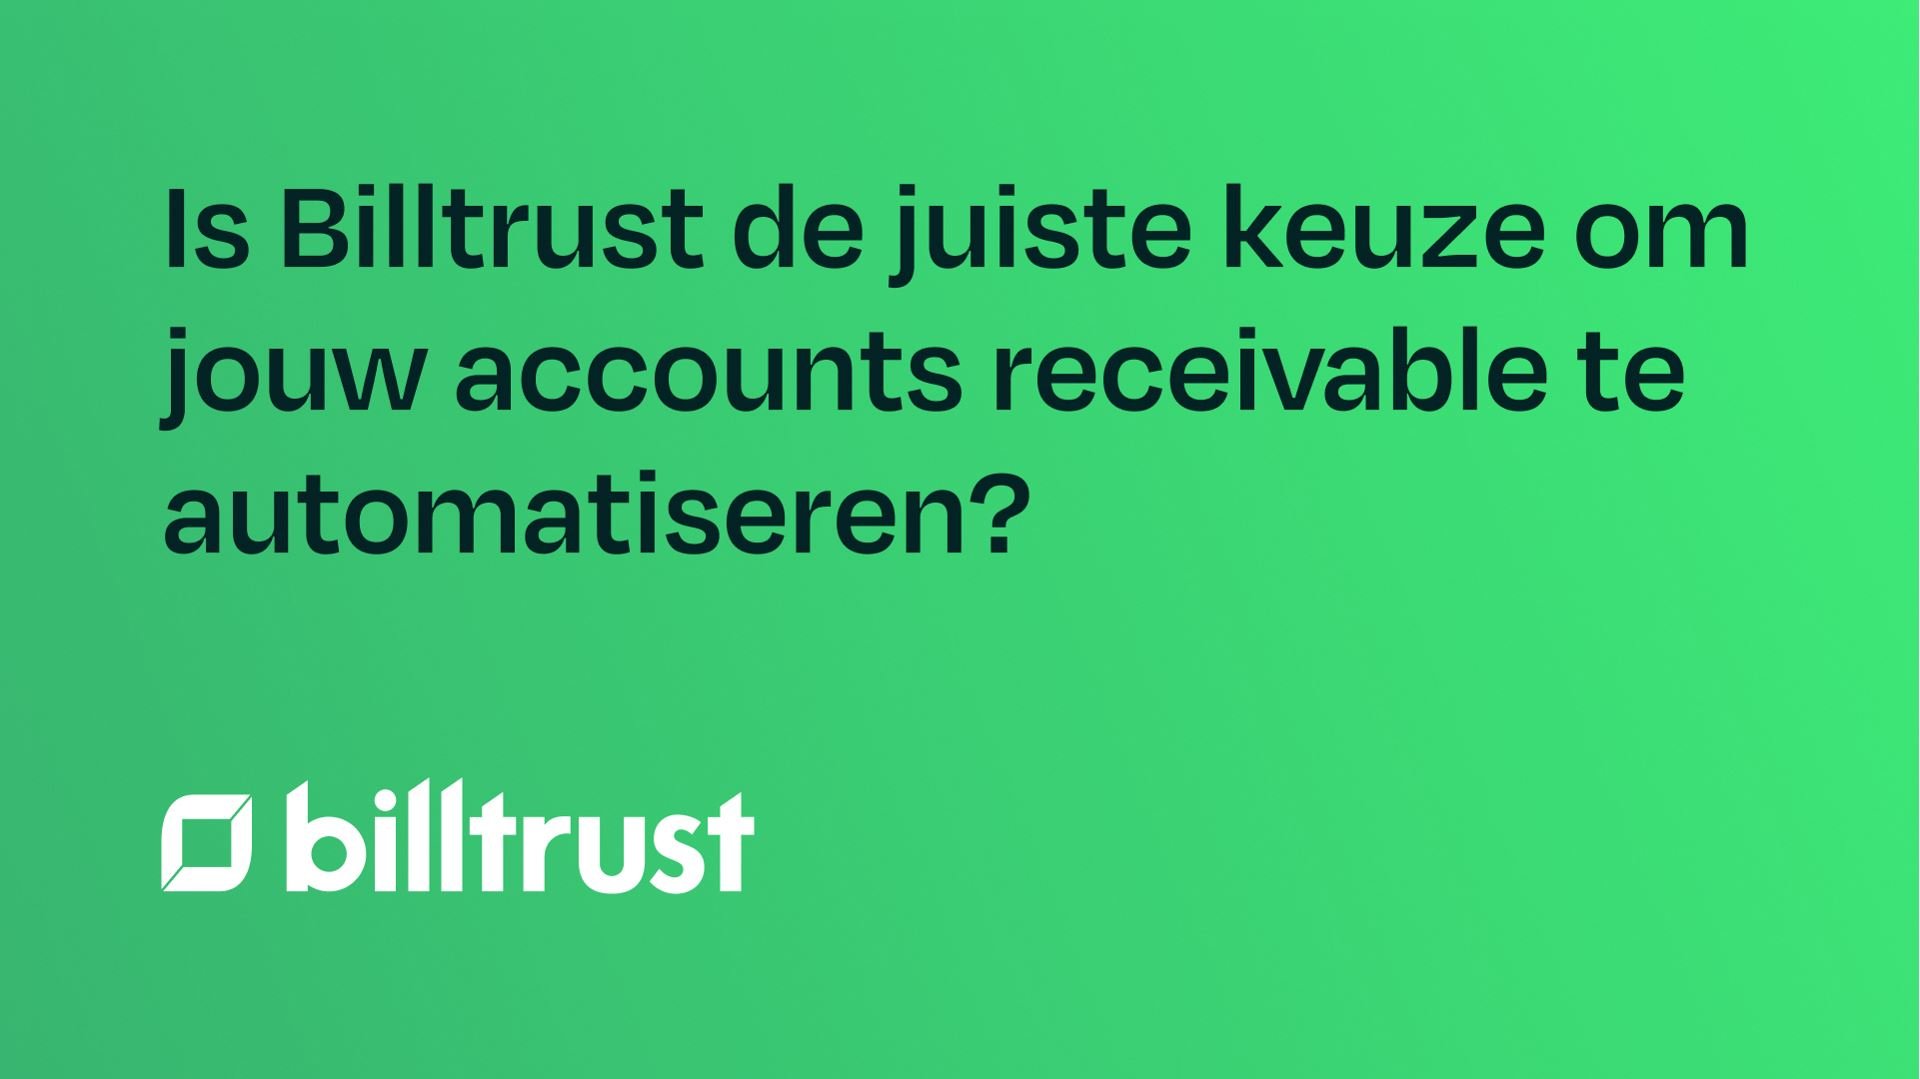 Is Billtrust de juiste keuze om jouw accounts receivable te automatiseren?